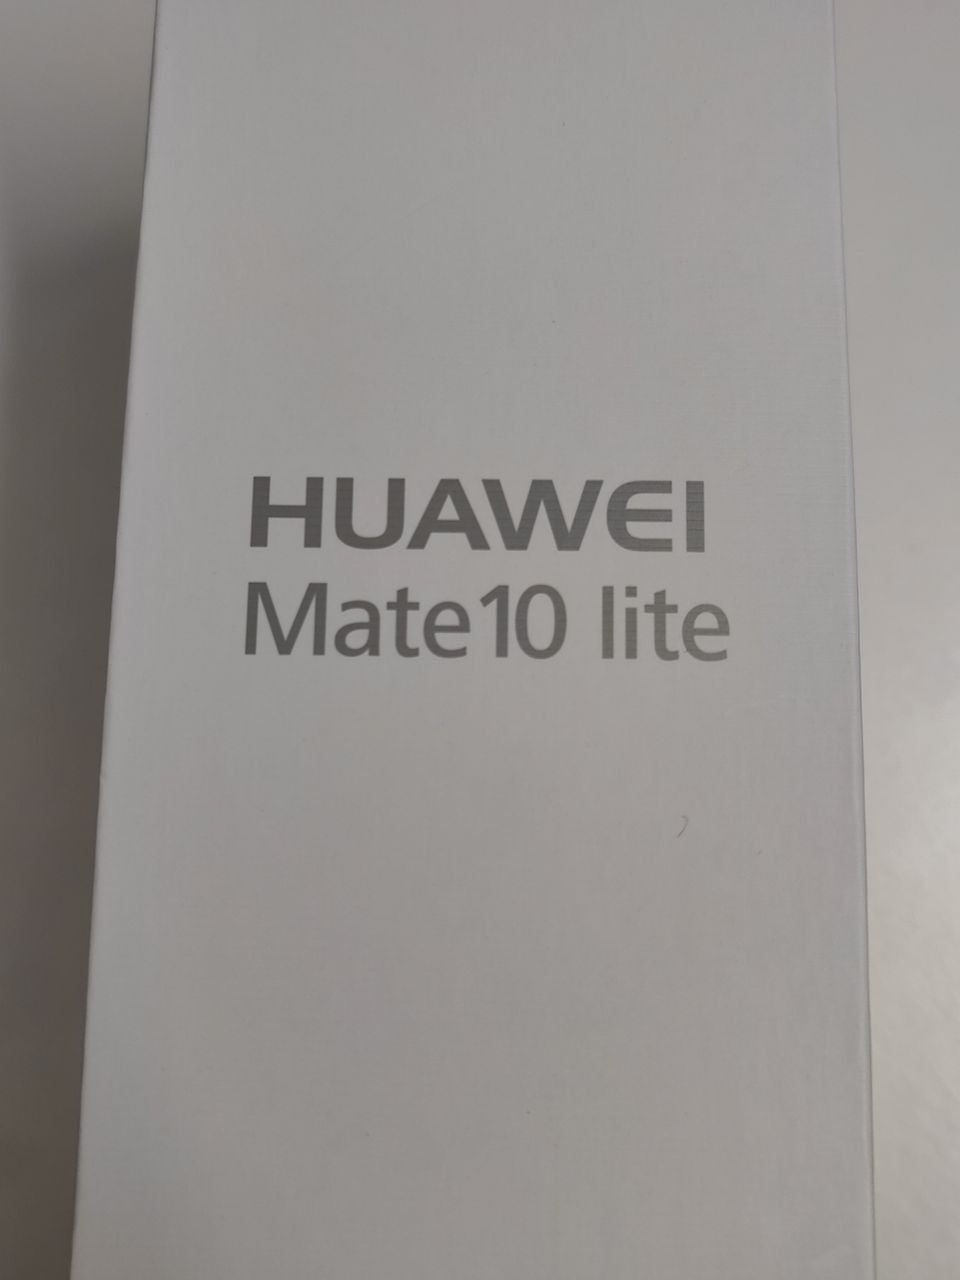 Huawei Mate 10 lite, Google